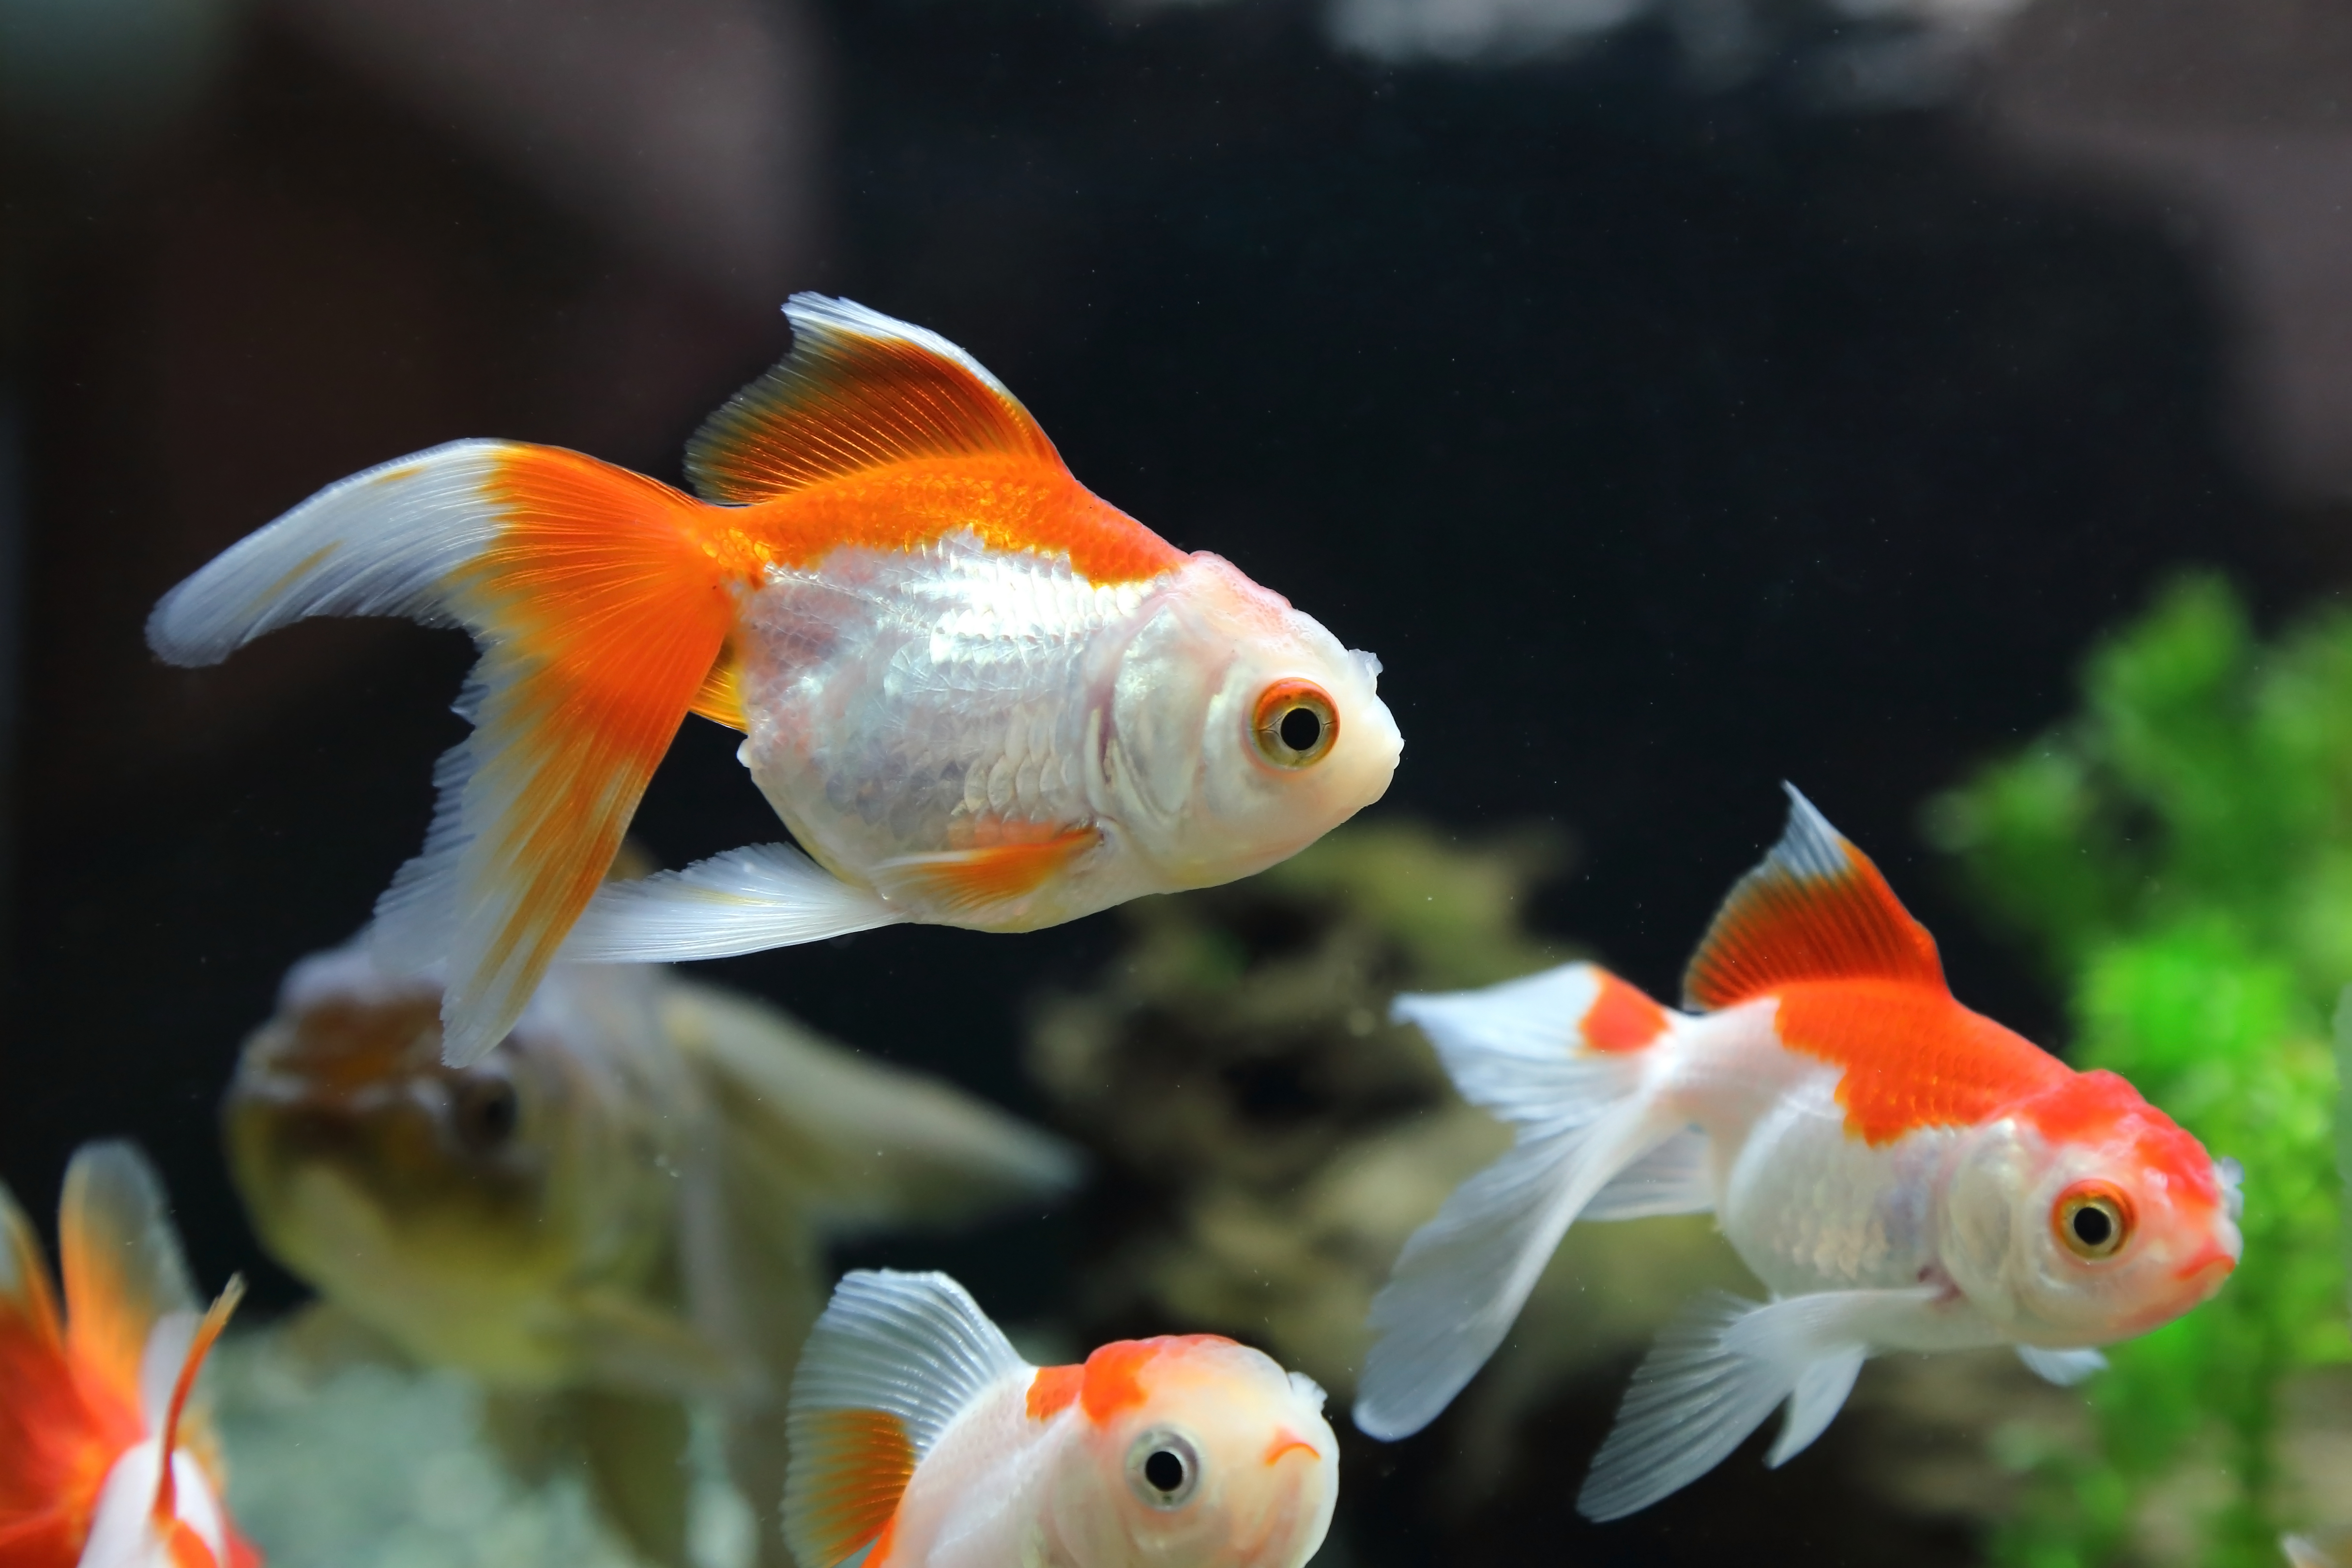 La mayoría de enfermedades en los peces se producen por parásitos y estrés. Estas se detectan mediante la observación. (Foto Prensa Libre: Shutterstock). 